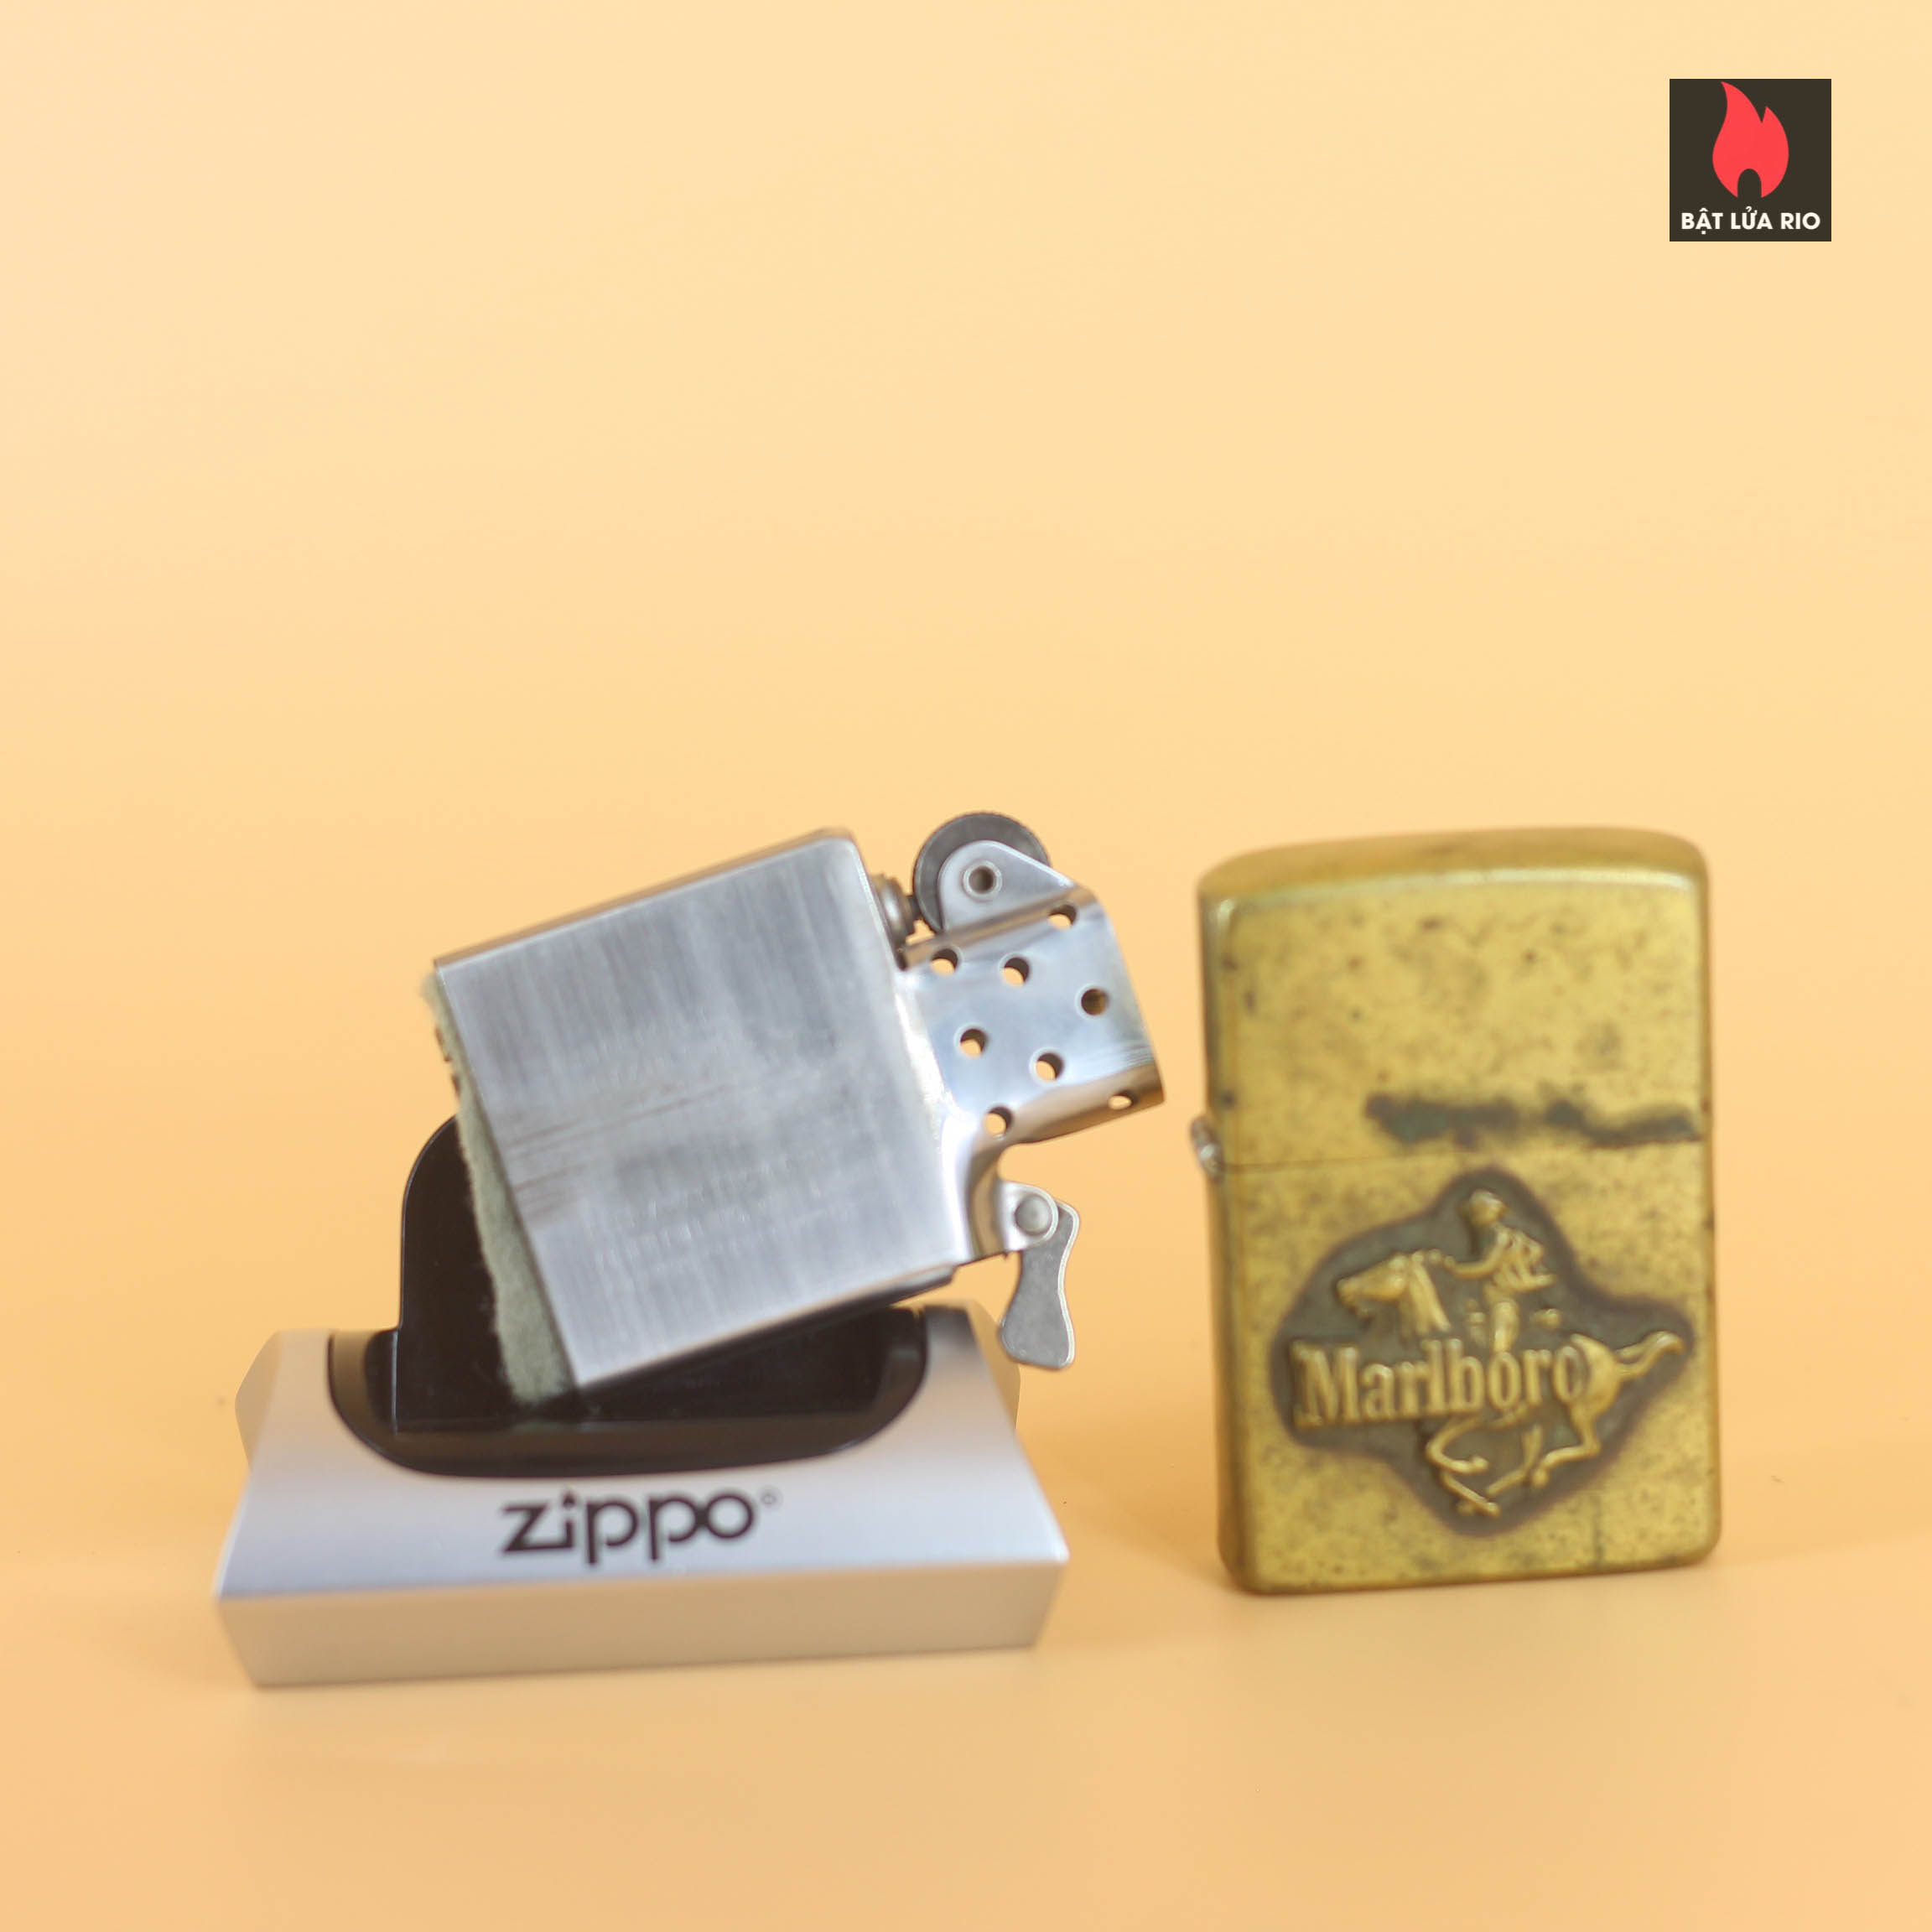 Zippo 1982 - Zippo Marlboro Running HorseMan 1982 - Solid Brass 35